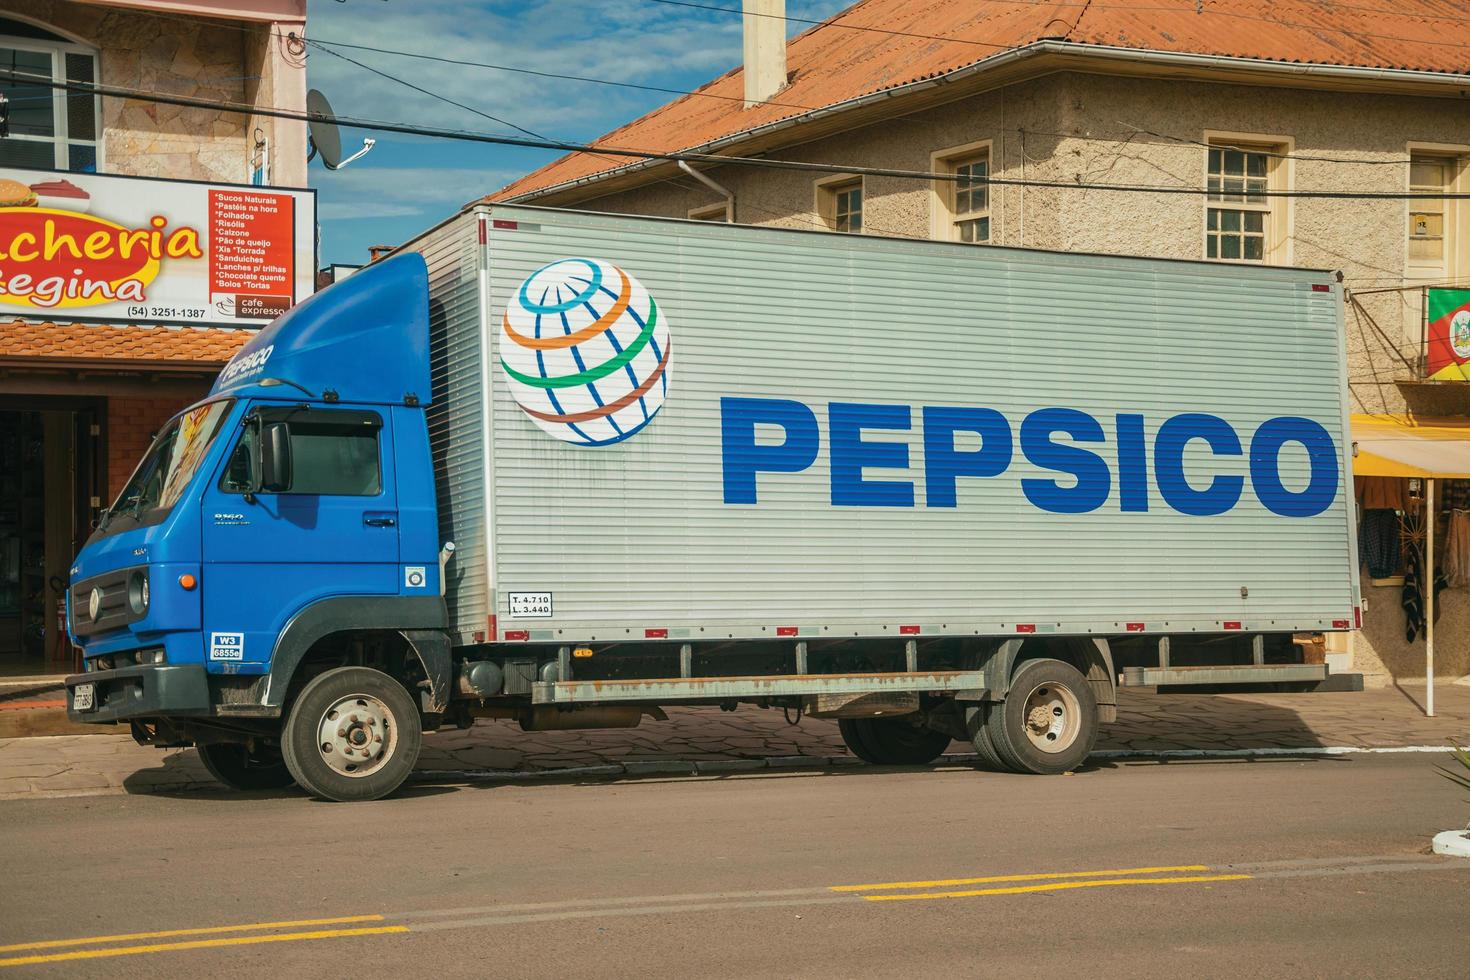 cambara do sul, brésil, 19 juillet 2019. marque pepsico peinte sur le côté d'un camion dans une rue en pierre de cambara do sul. une ville avec des attractions touristiques naturelles étonnantes. photo